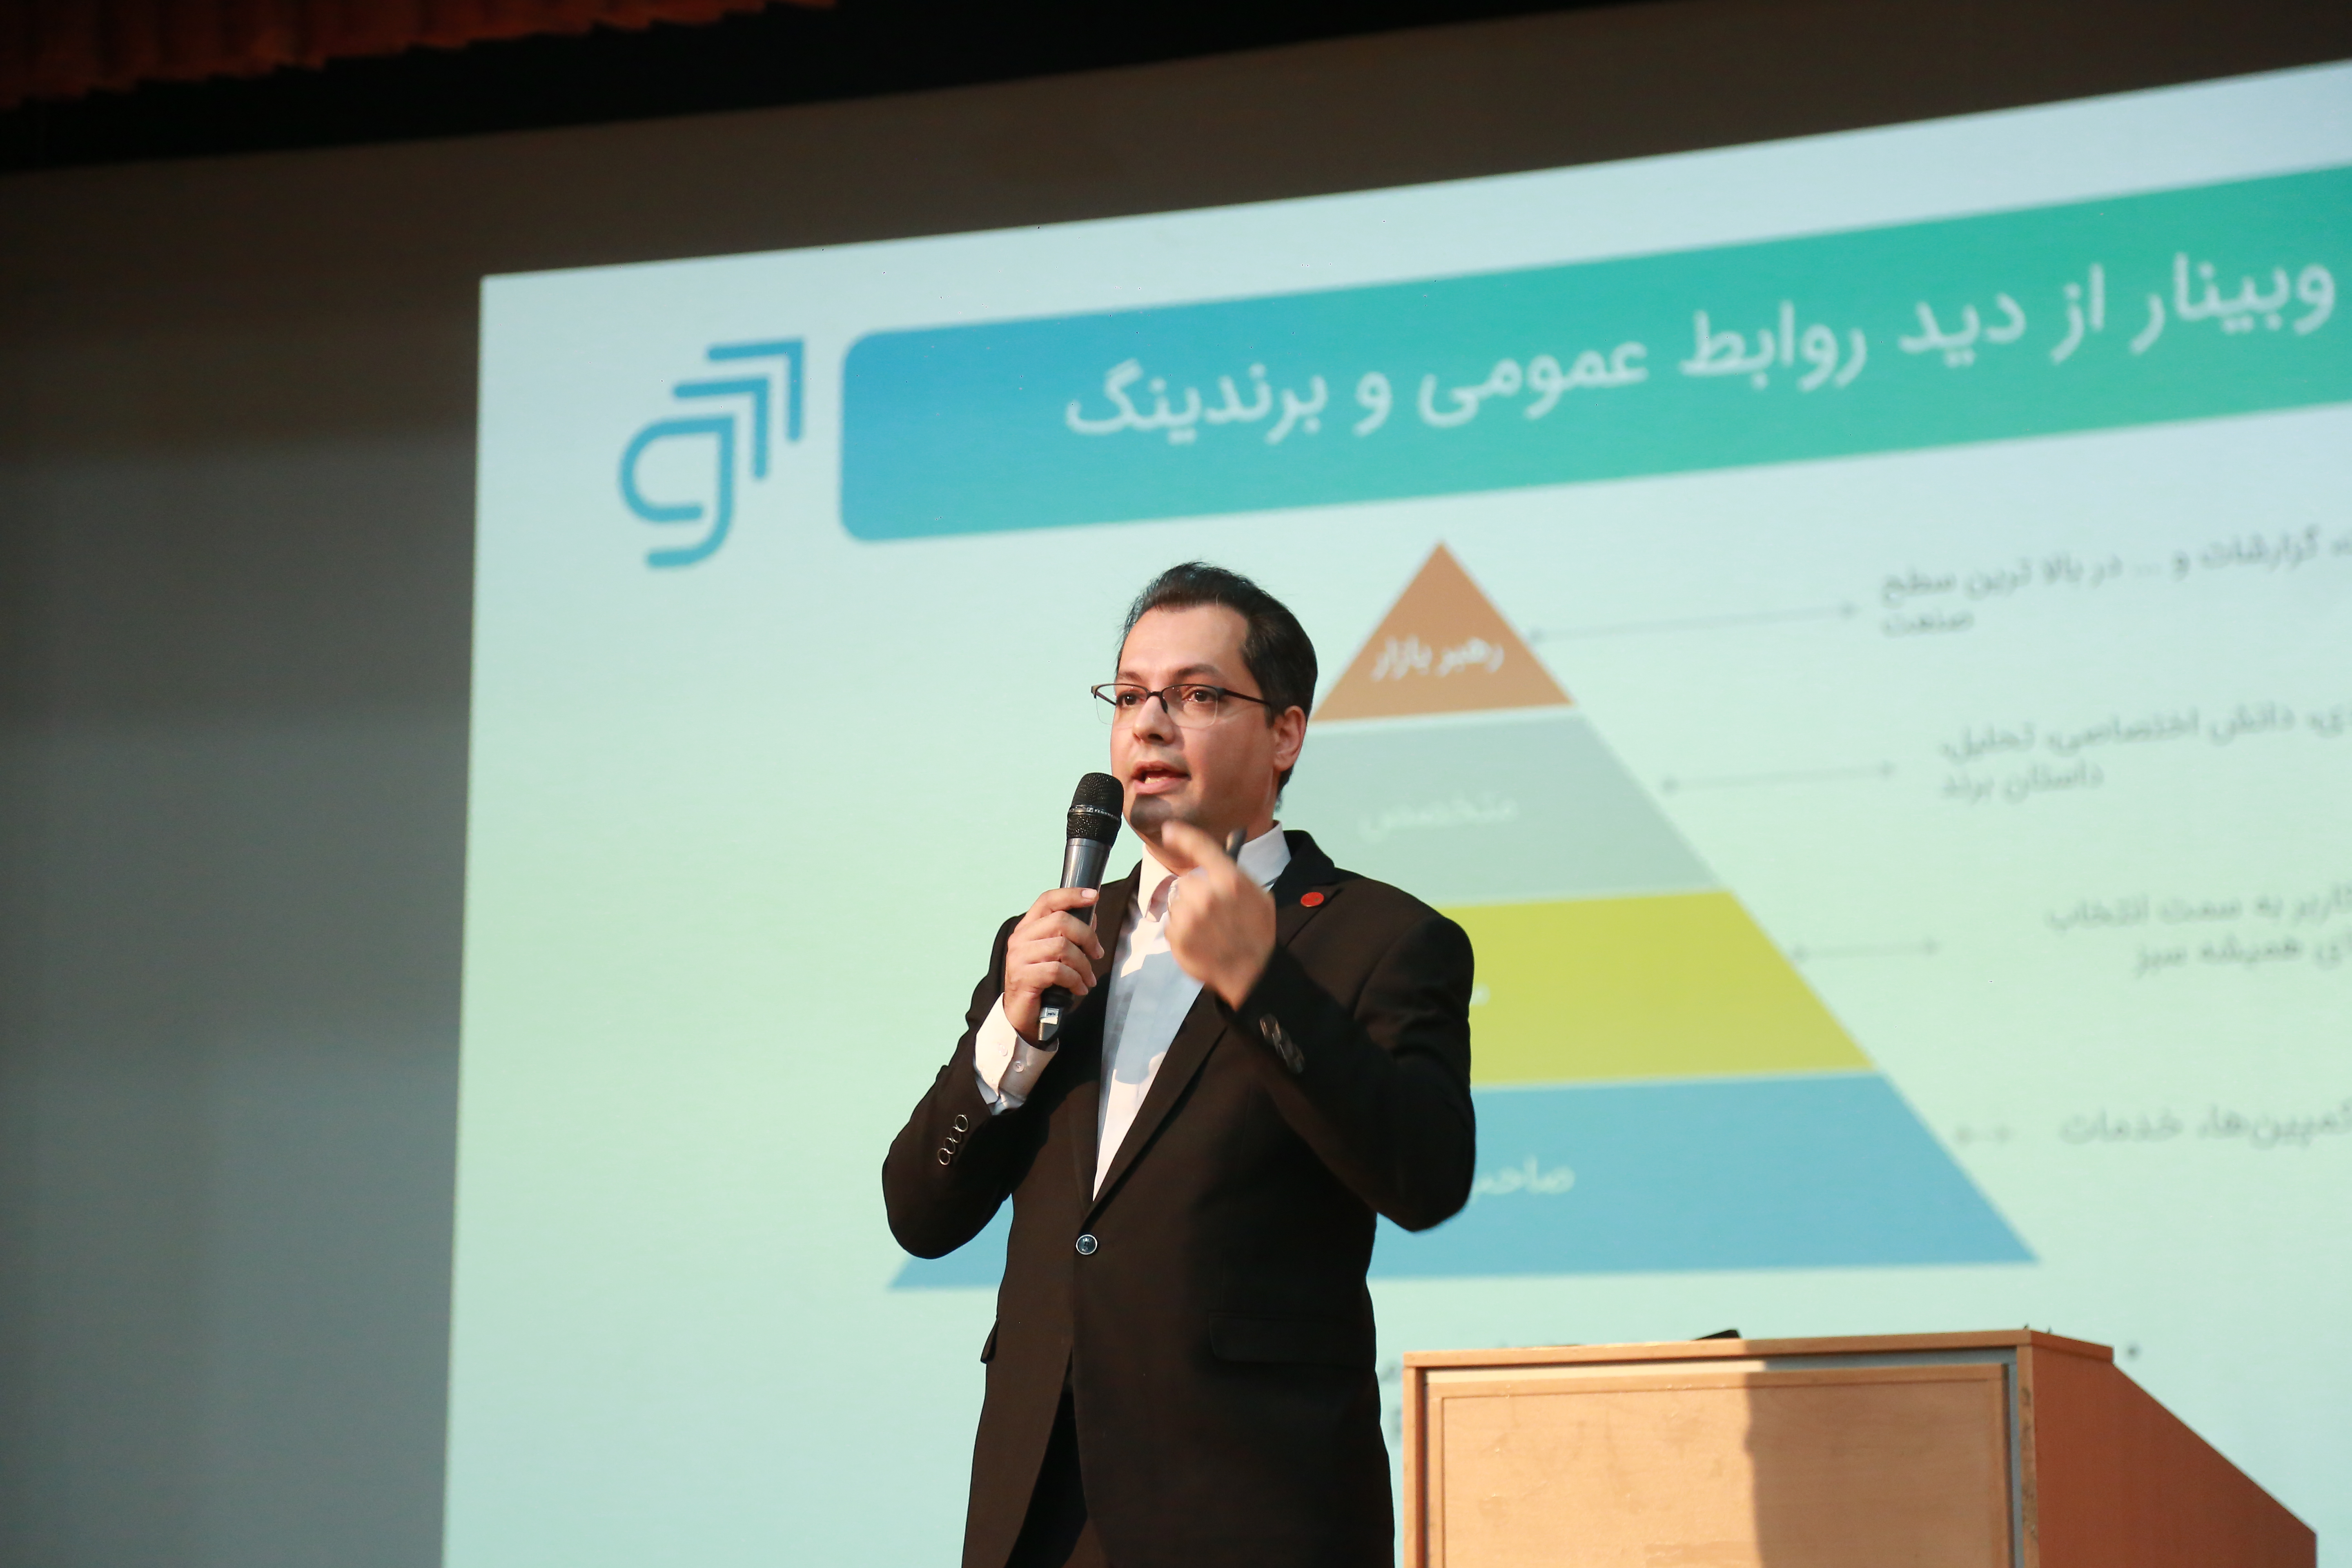 سخنرانی مجید کثیری در رویداد وبیناردی